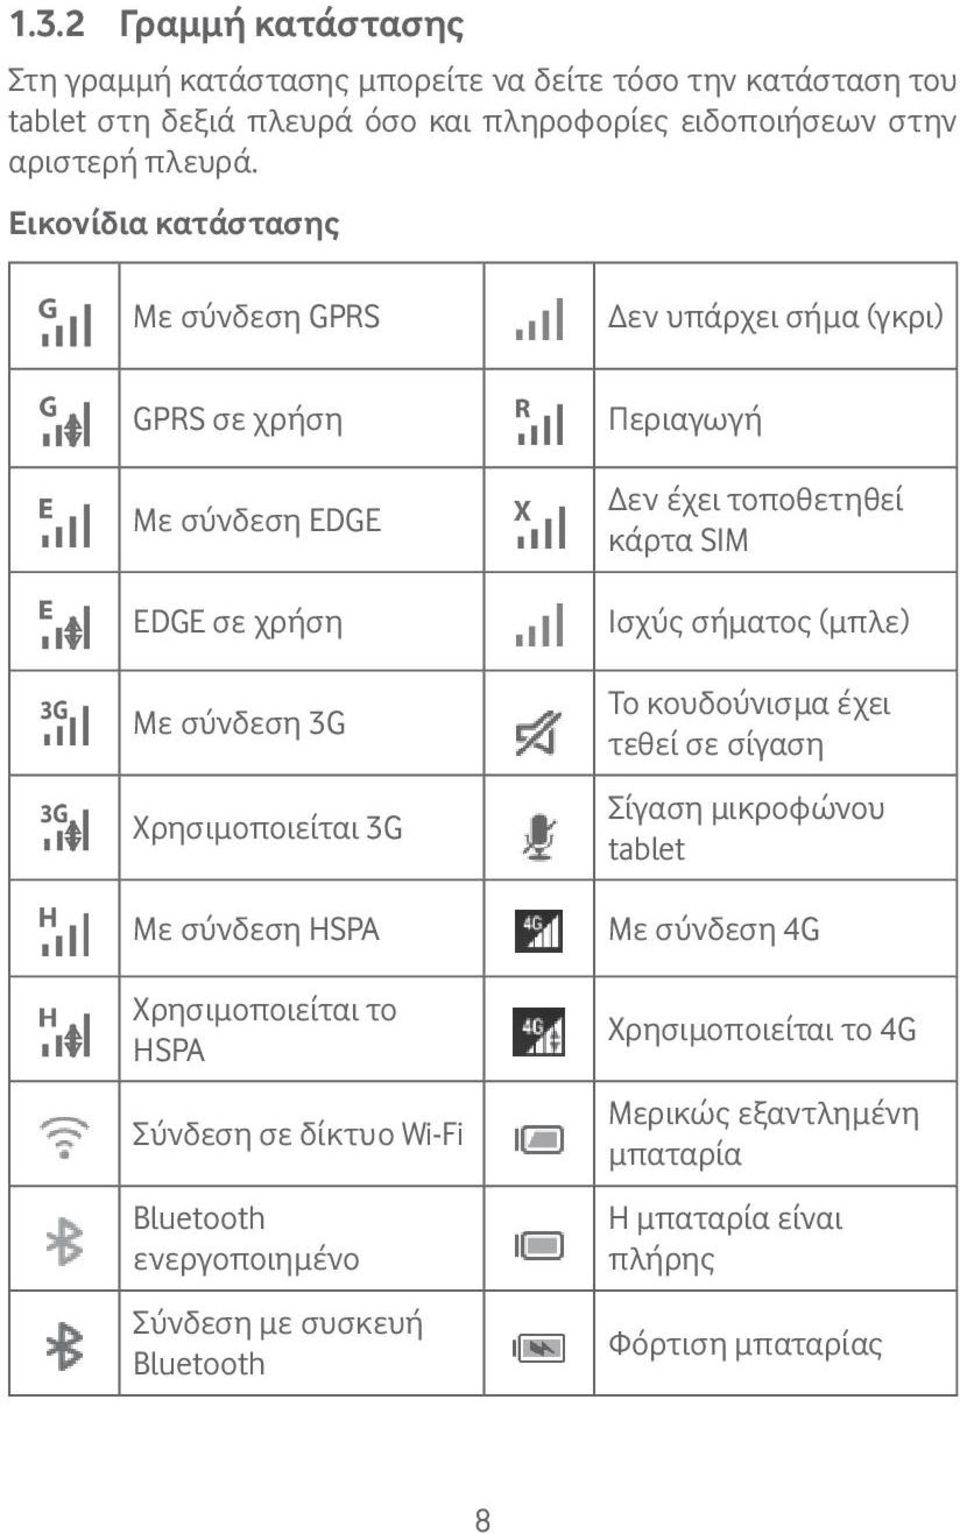 Εικονίδια κατάστασης Με σύνδεση GPRS GPRS σε χρήση Με σύνδεση EDGE EDGE σε χρήση Με σύνδεση 3G Χρησιμοποιείται 3G Με σύνδεση HSPA Χρησιμοποιείται το HSPA Σύνδεση